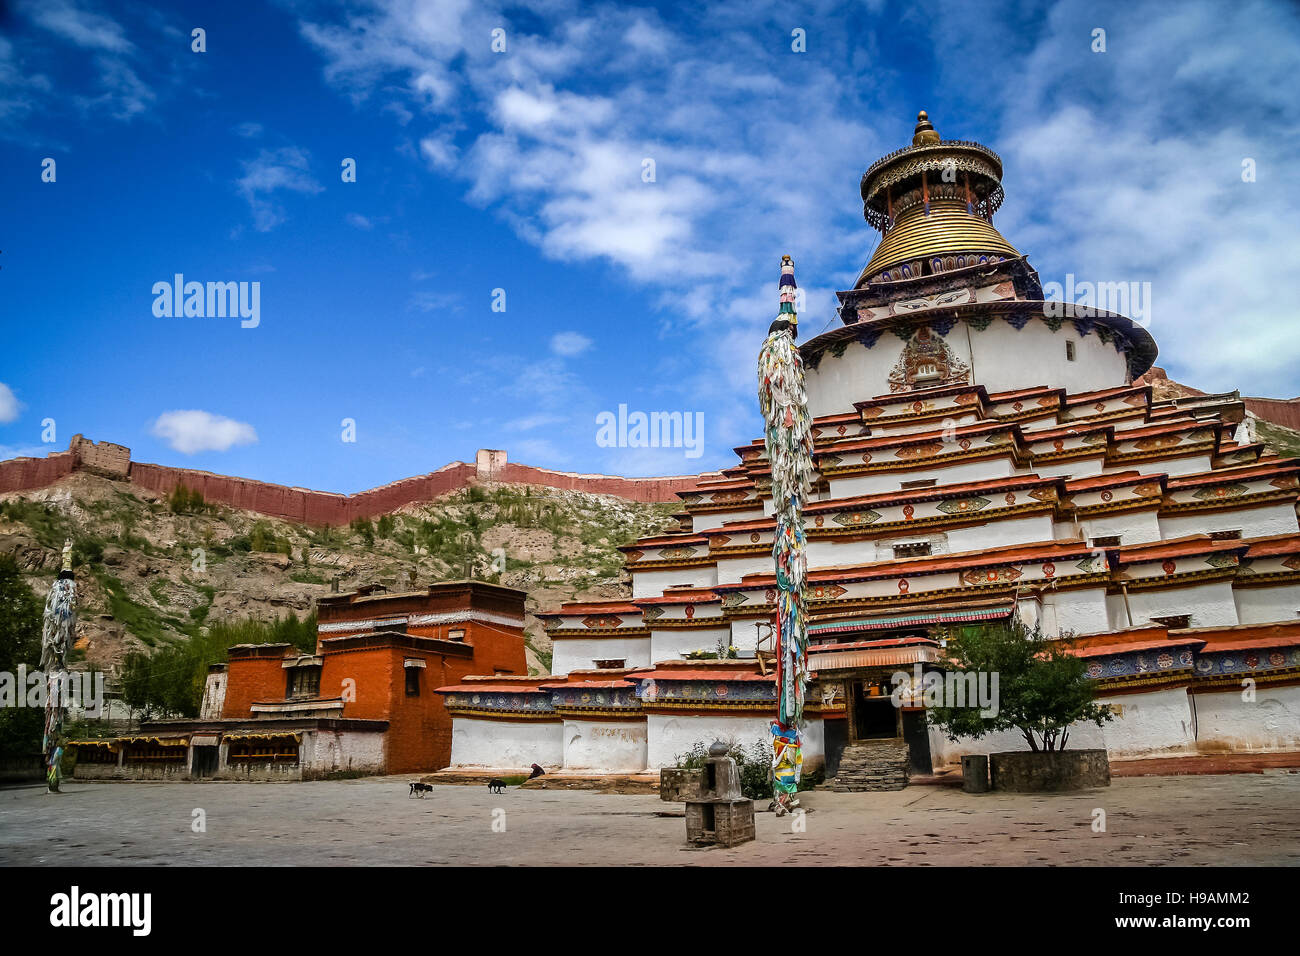 The Buddhist Kumbum chorten in Gyantse in the Tibet Autonomous Region of China Stock Photo